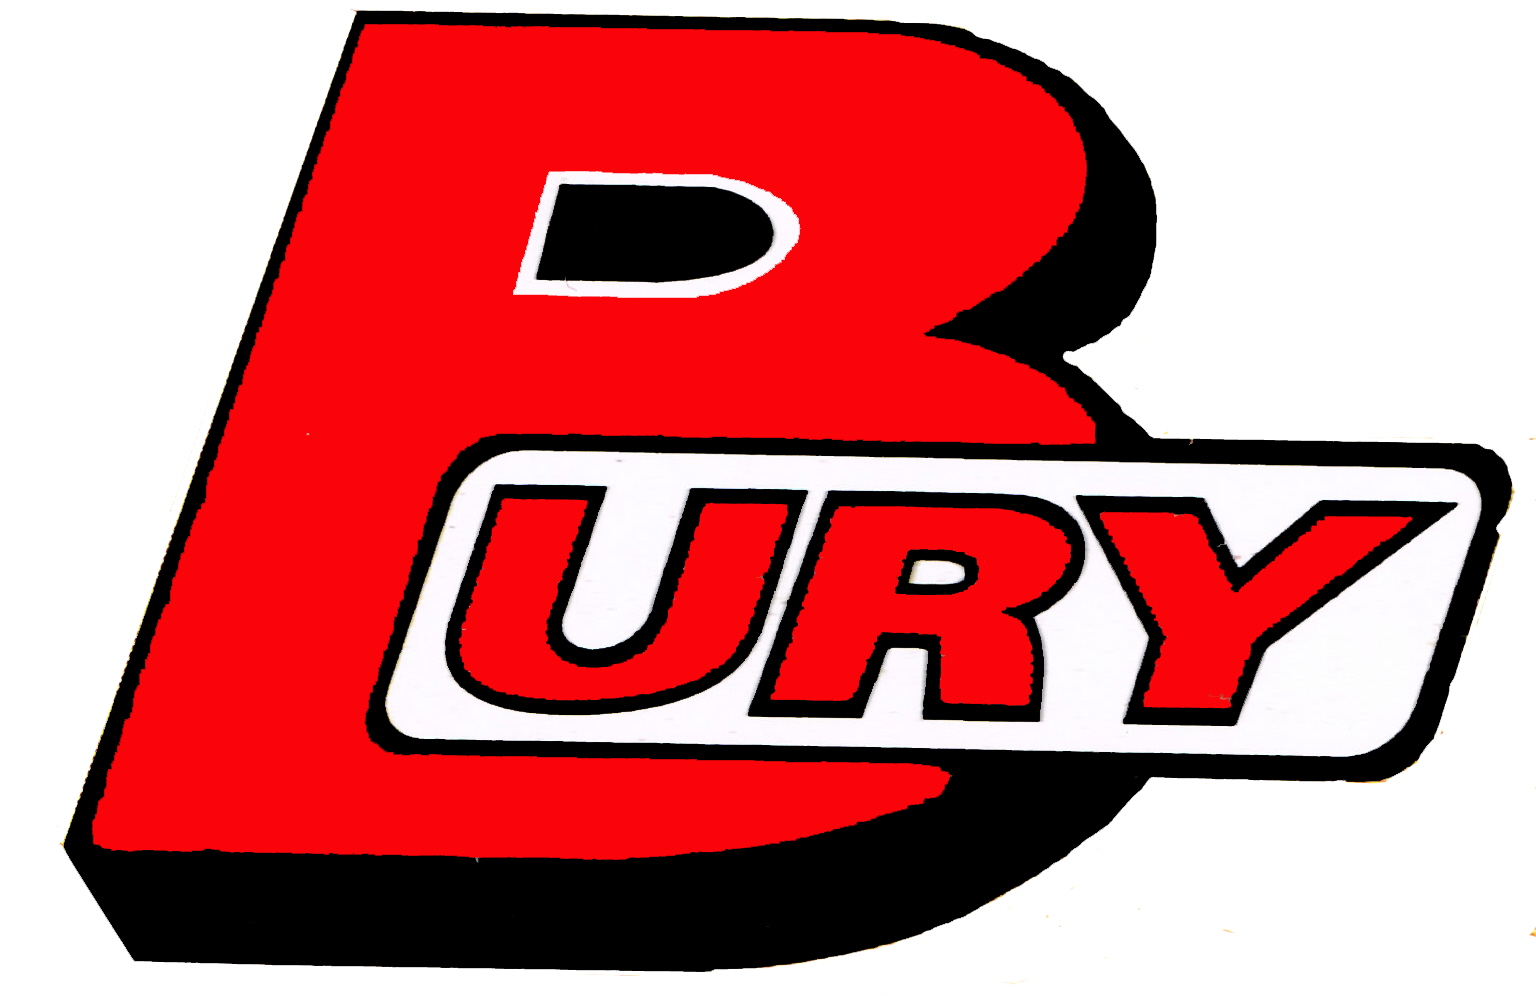 Bury logo hauptseite neu